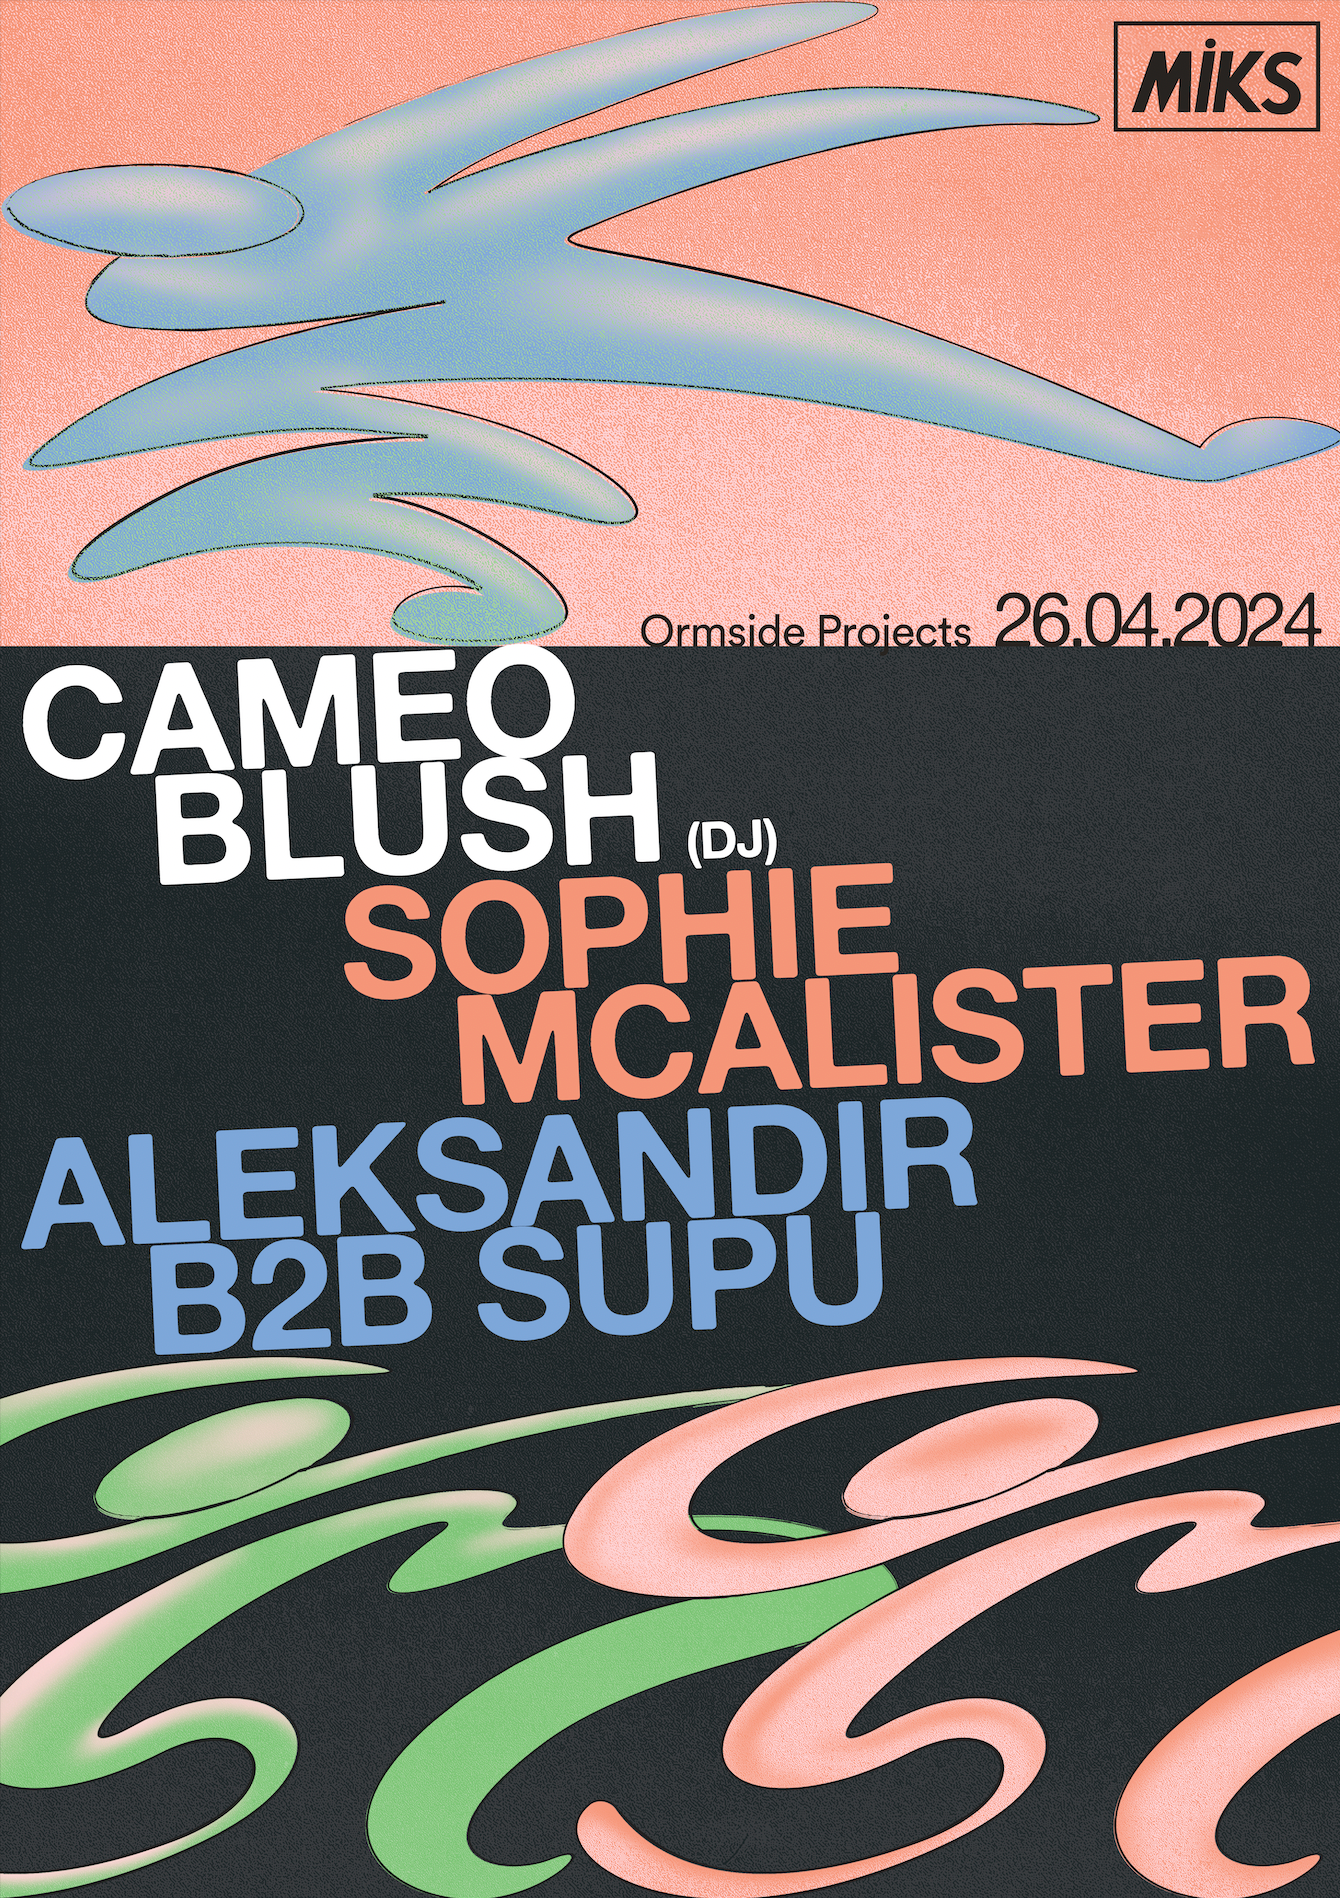 Miks with Cameo Blush, Sophie McAlister, Supu & Aleksandir - Página trasera